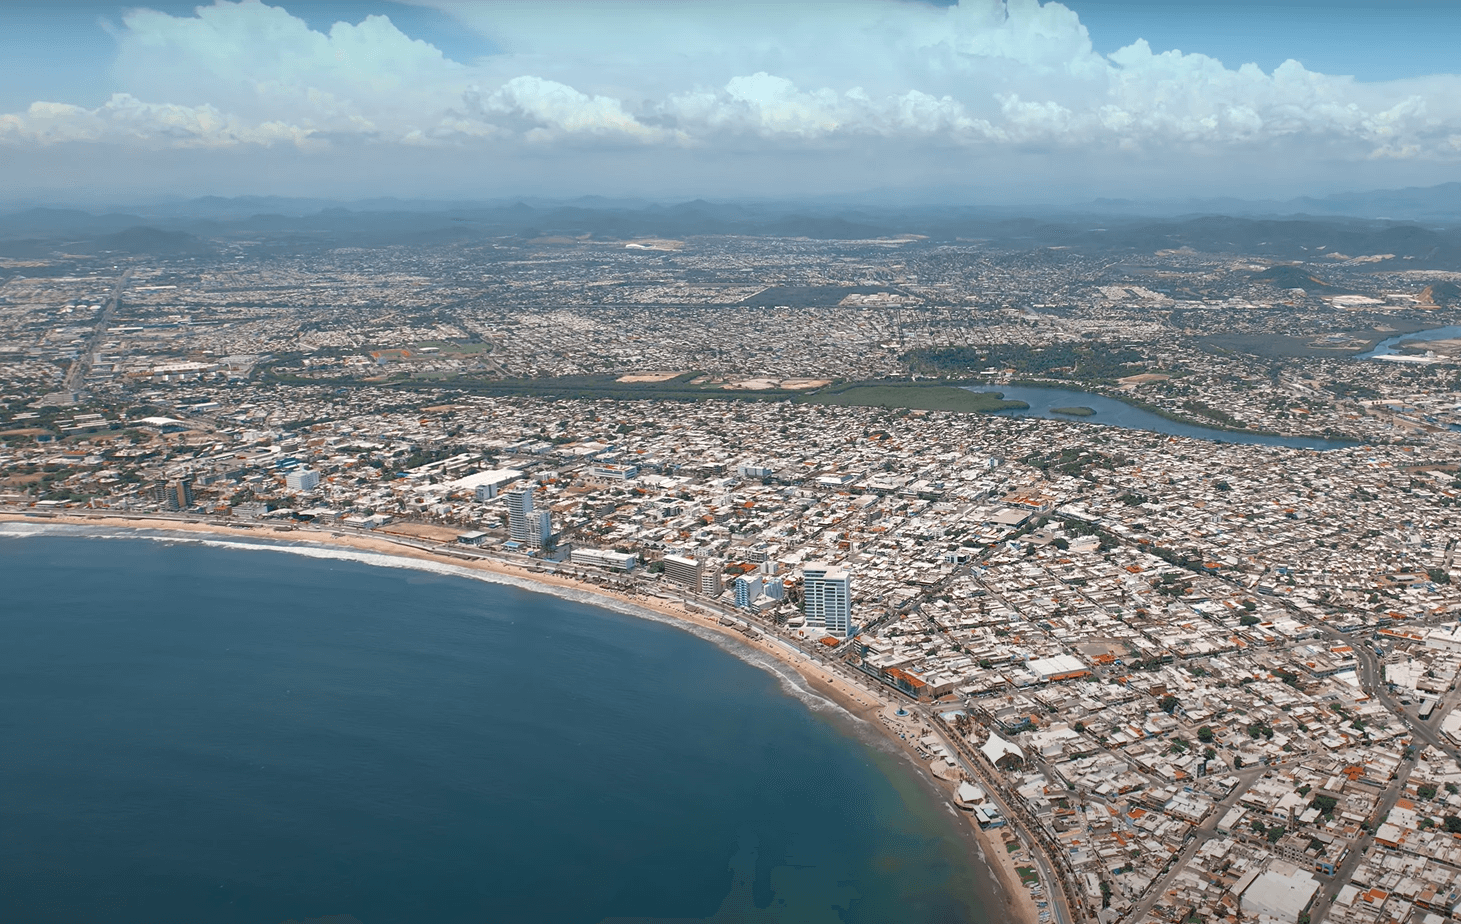 Vista aérea de la ciudad de Mazatlán con desarrollos inmobiliarios destacados